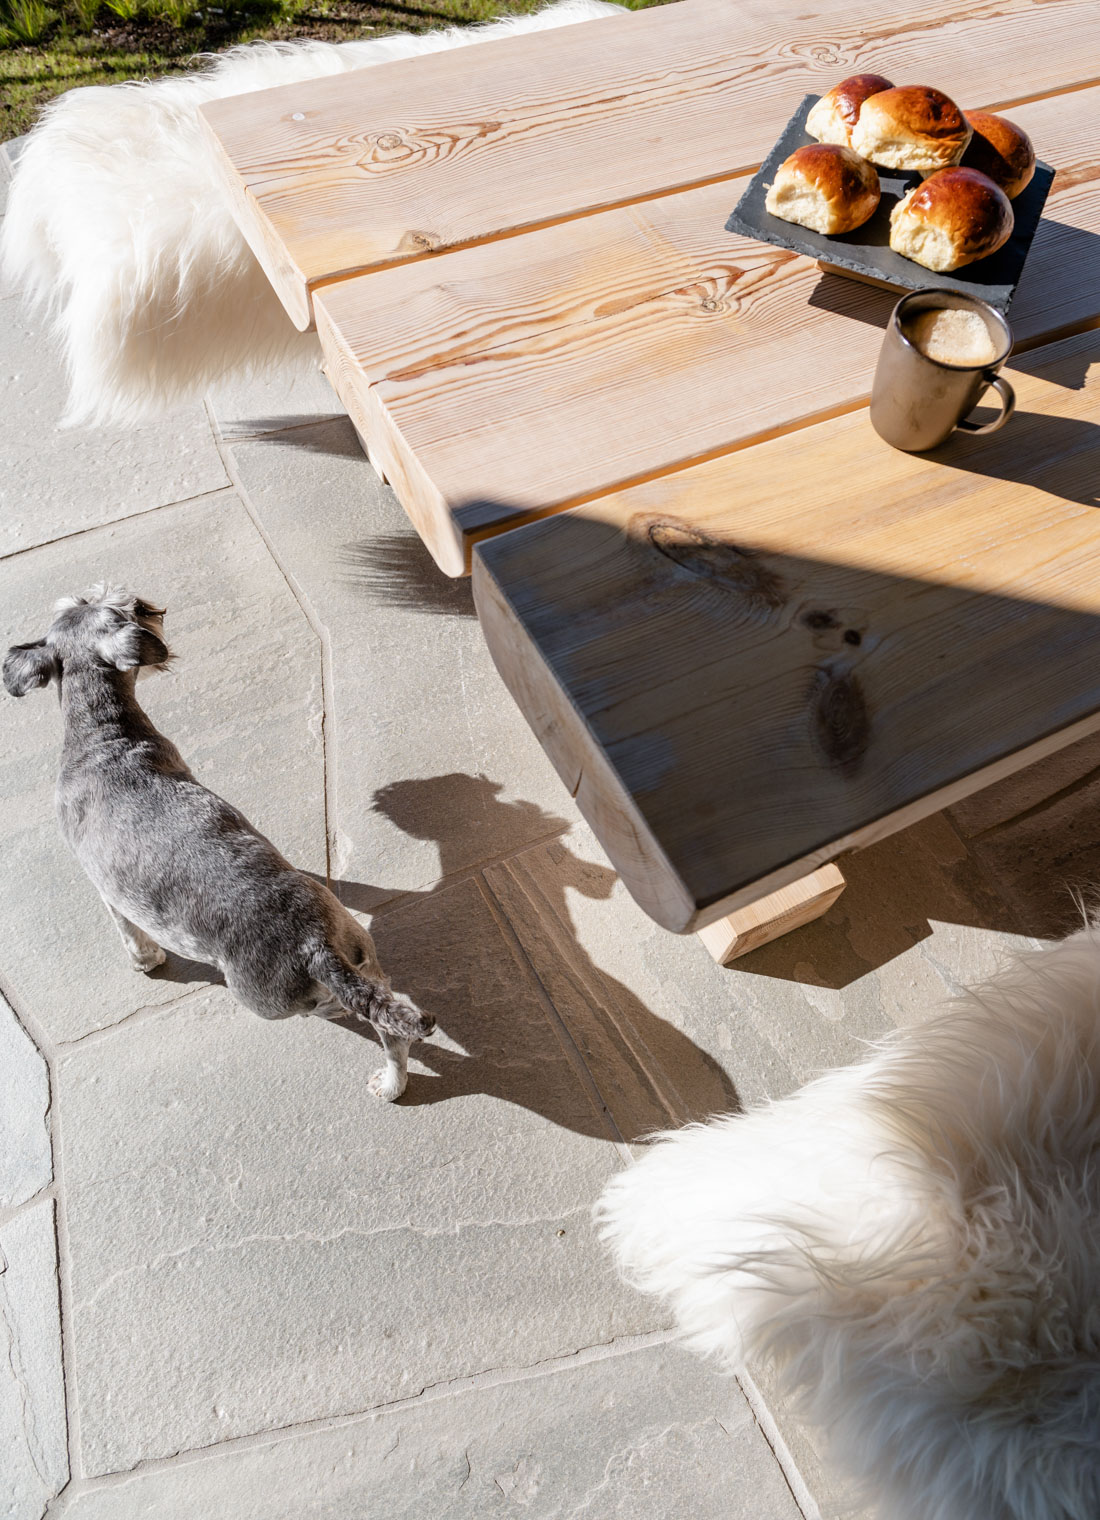 Et bilde ovenfra over et tømmerbord medet fat med boller og en hund som står på terrassen med bruddskifer